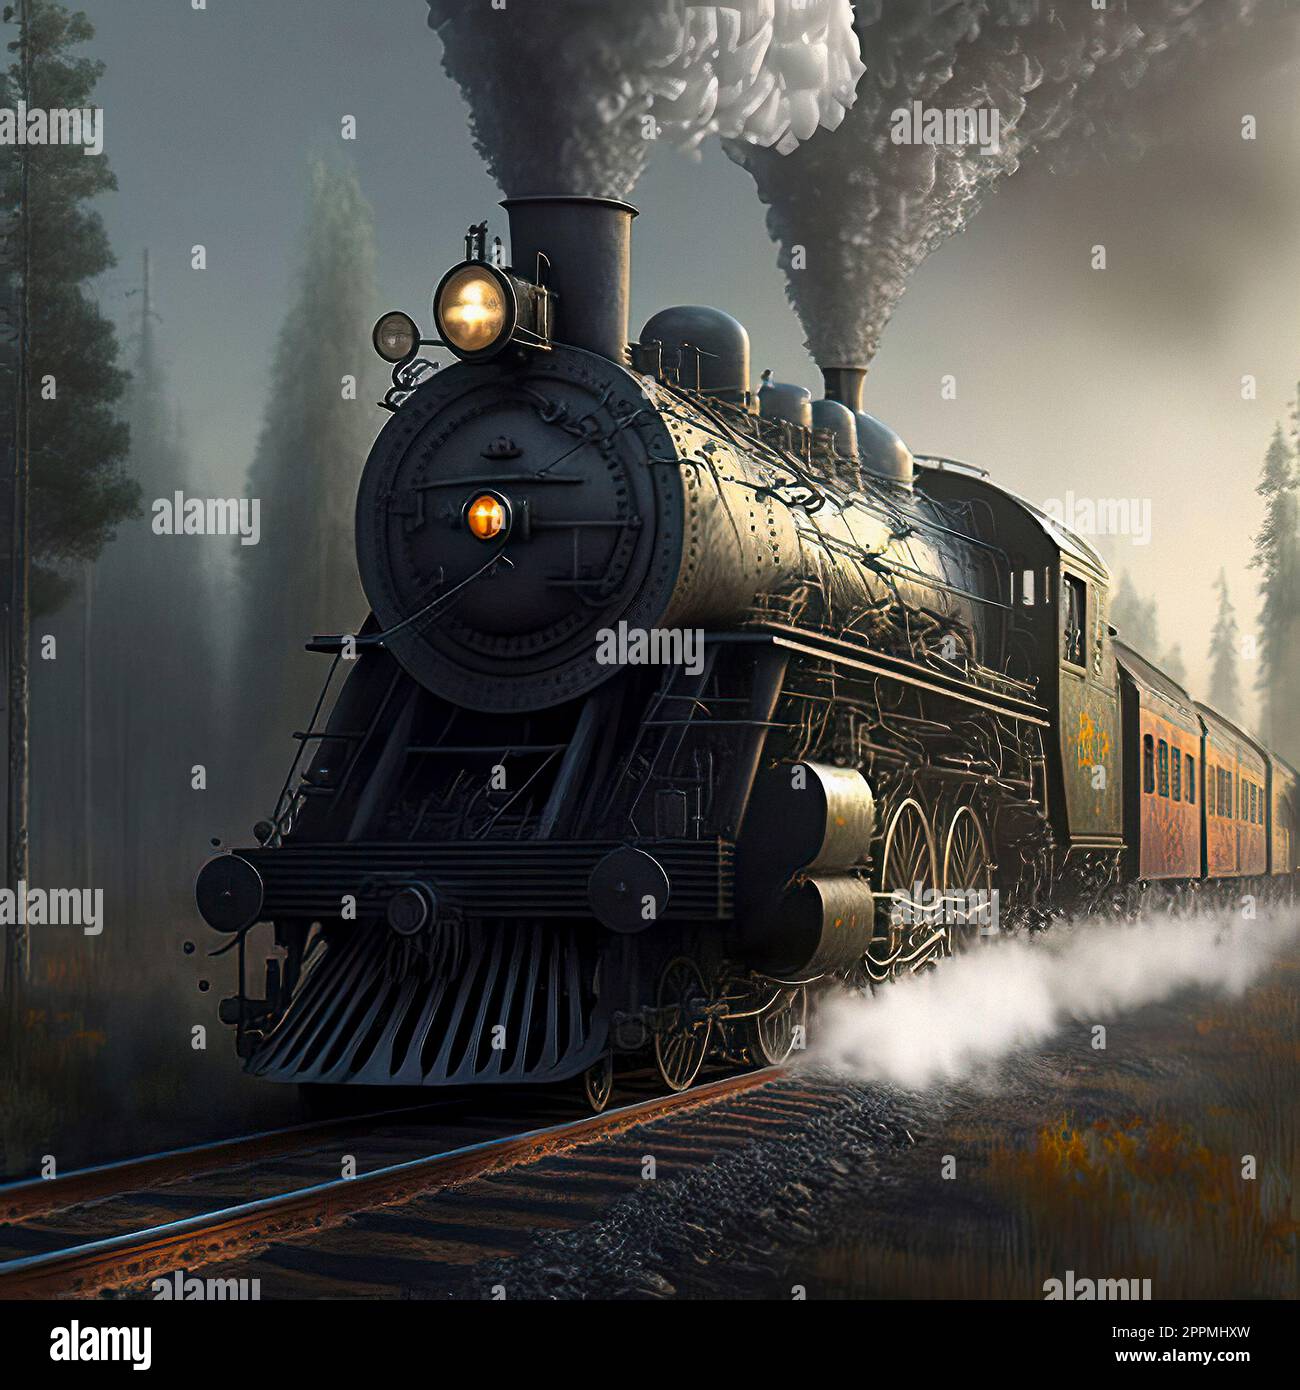 Un train à moteur à vapeur parcourt une dense forêt de pins foggy avec un corps en métal noir et des roues agitées, remuant la brume et créant une atmosphère endiablée et sinistre Banque D'Images